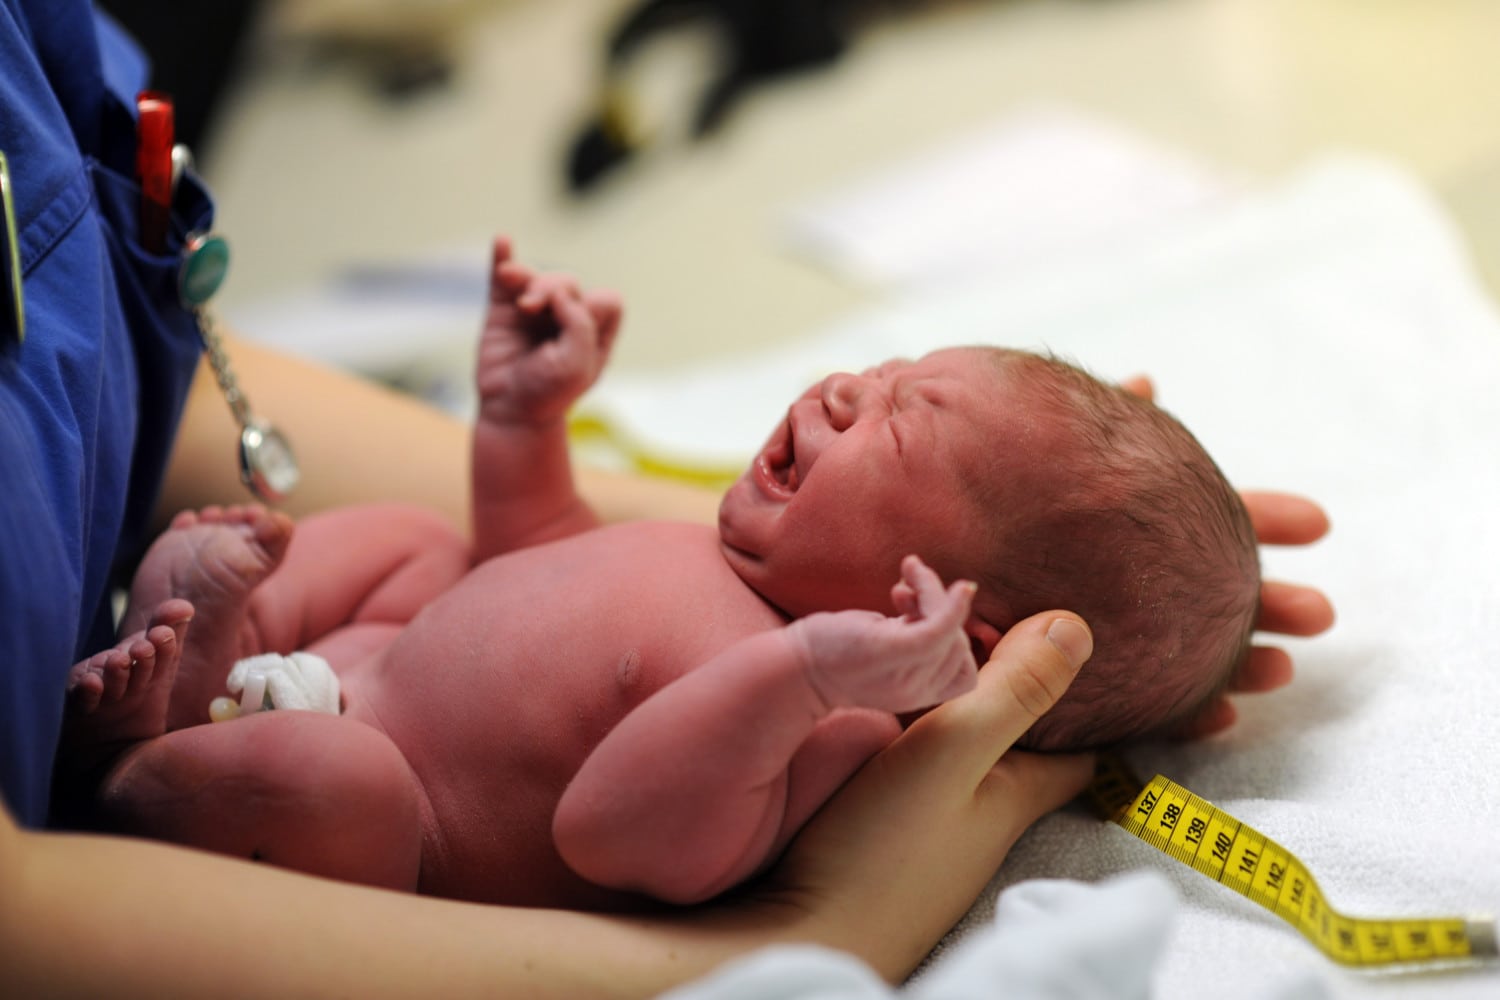 Geburt baby aus der scheide 💖 Ребенок наглотался околоплодны